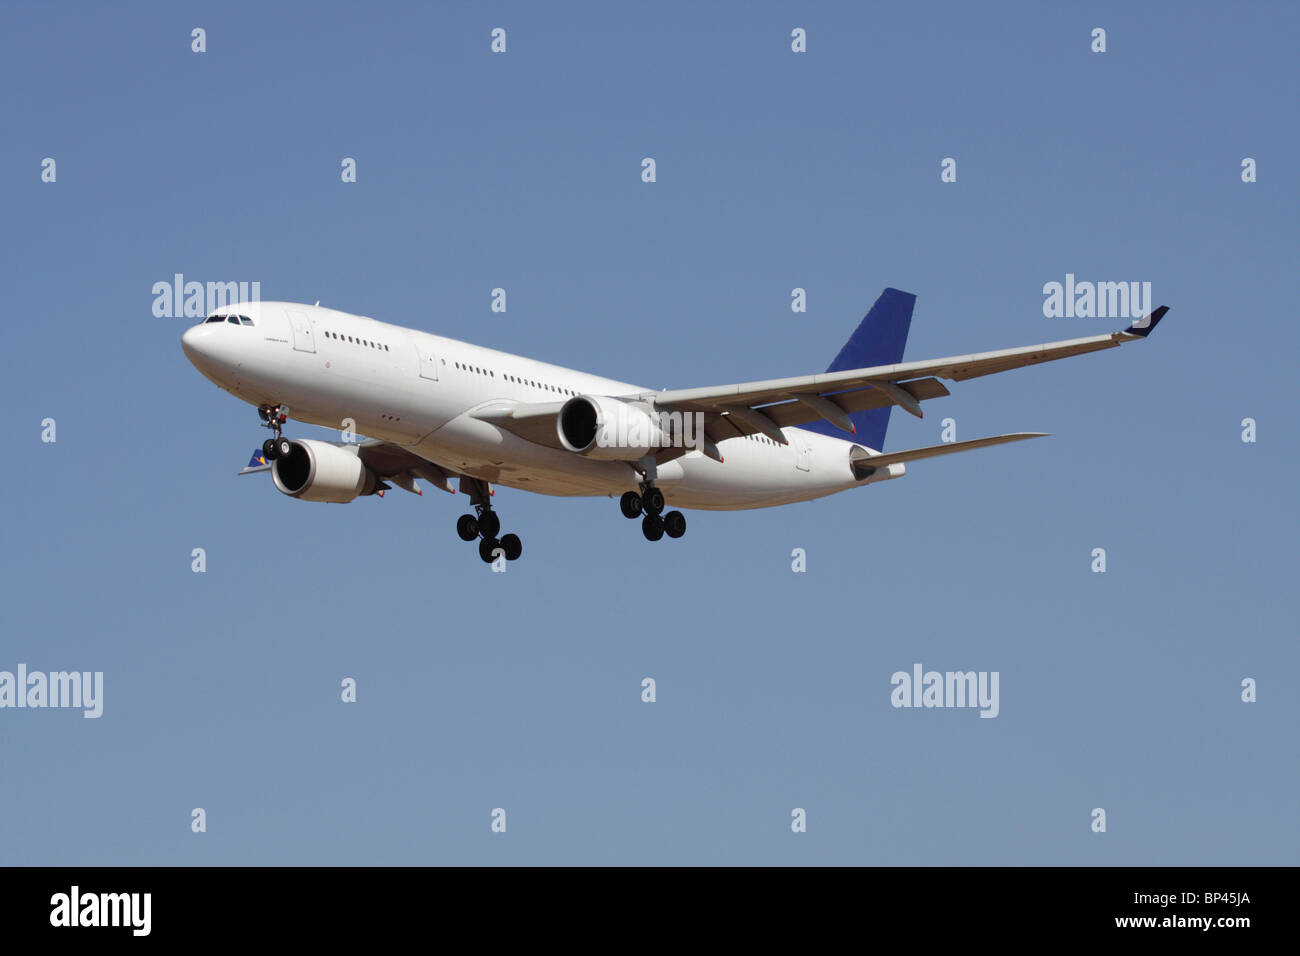 Viaggi aerei. Airbus A330 a lunga percorrenza con un aereo da passeggeri commerciale in volo contro un cielo blu. Nessun livrea e dettagli proprietari cancellati. Foto Stock